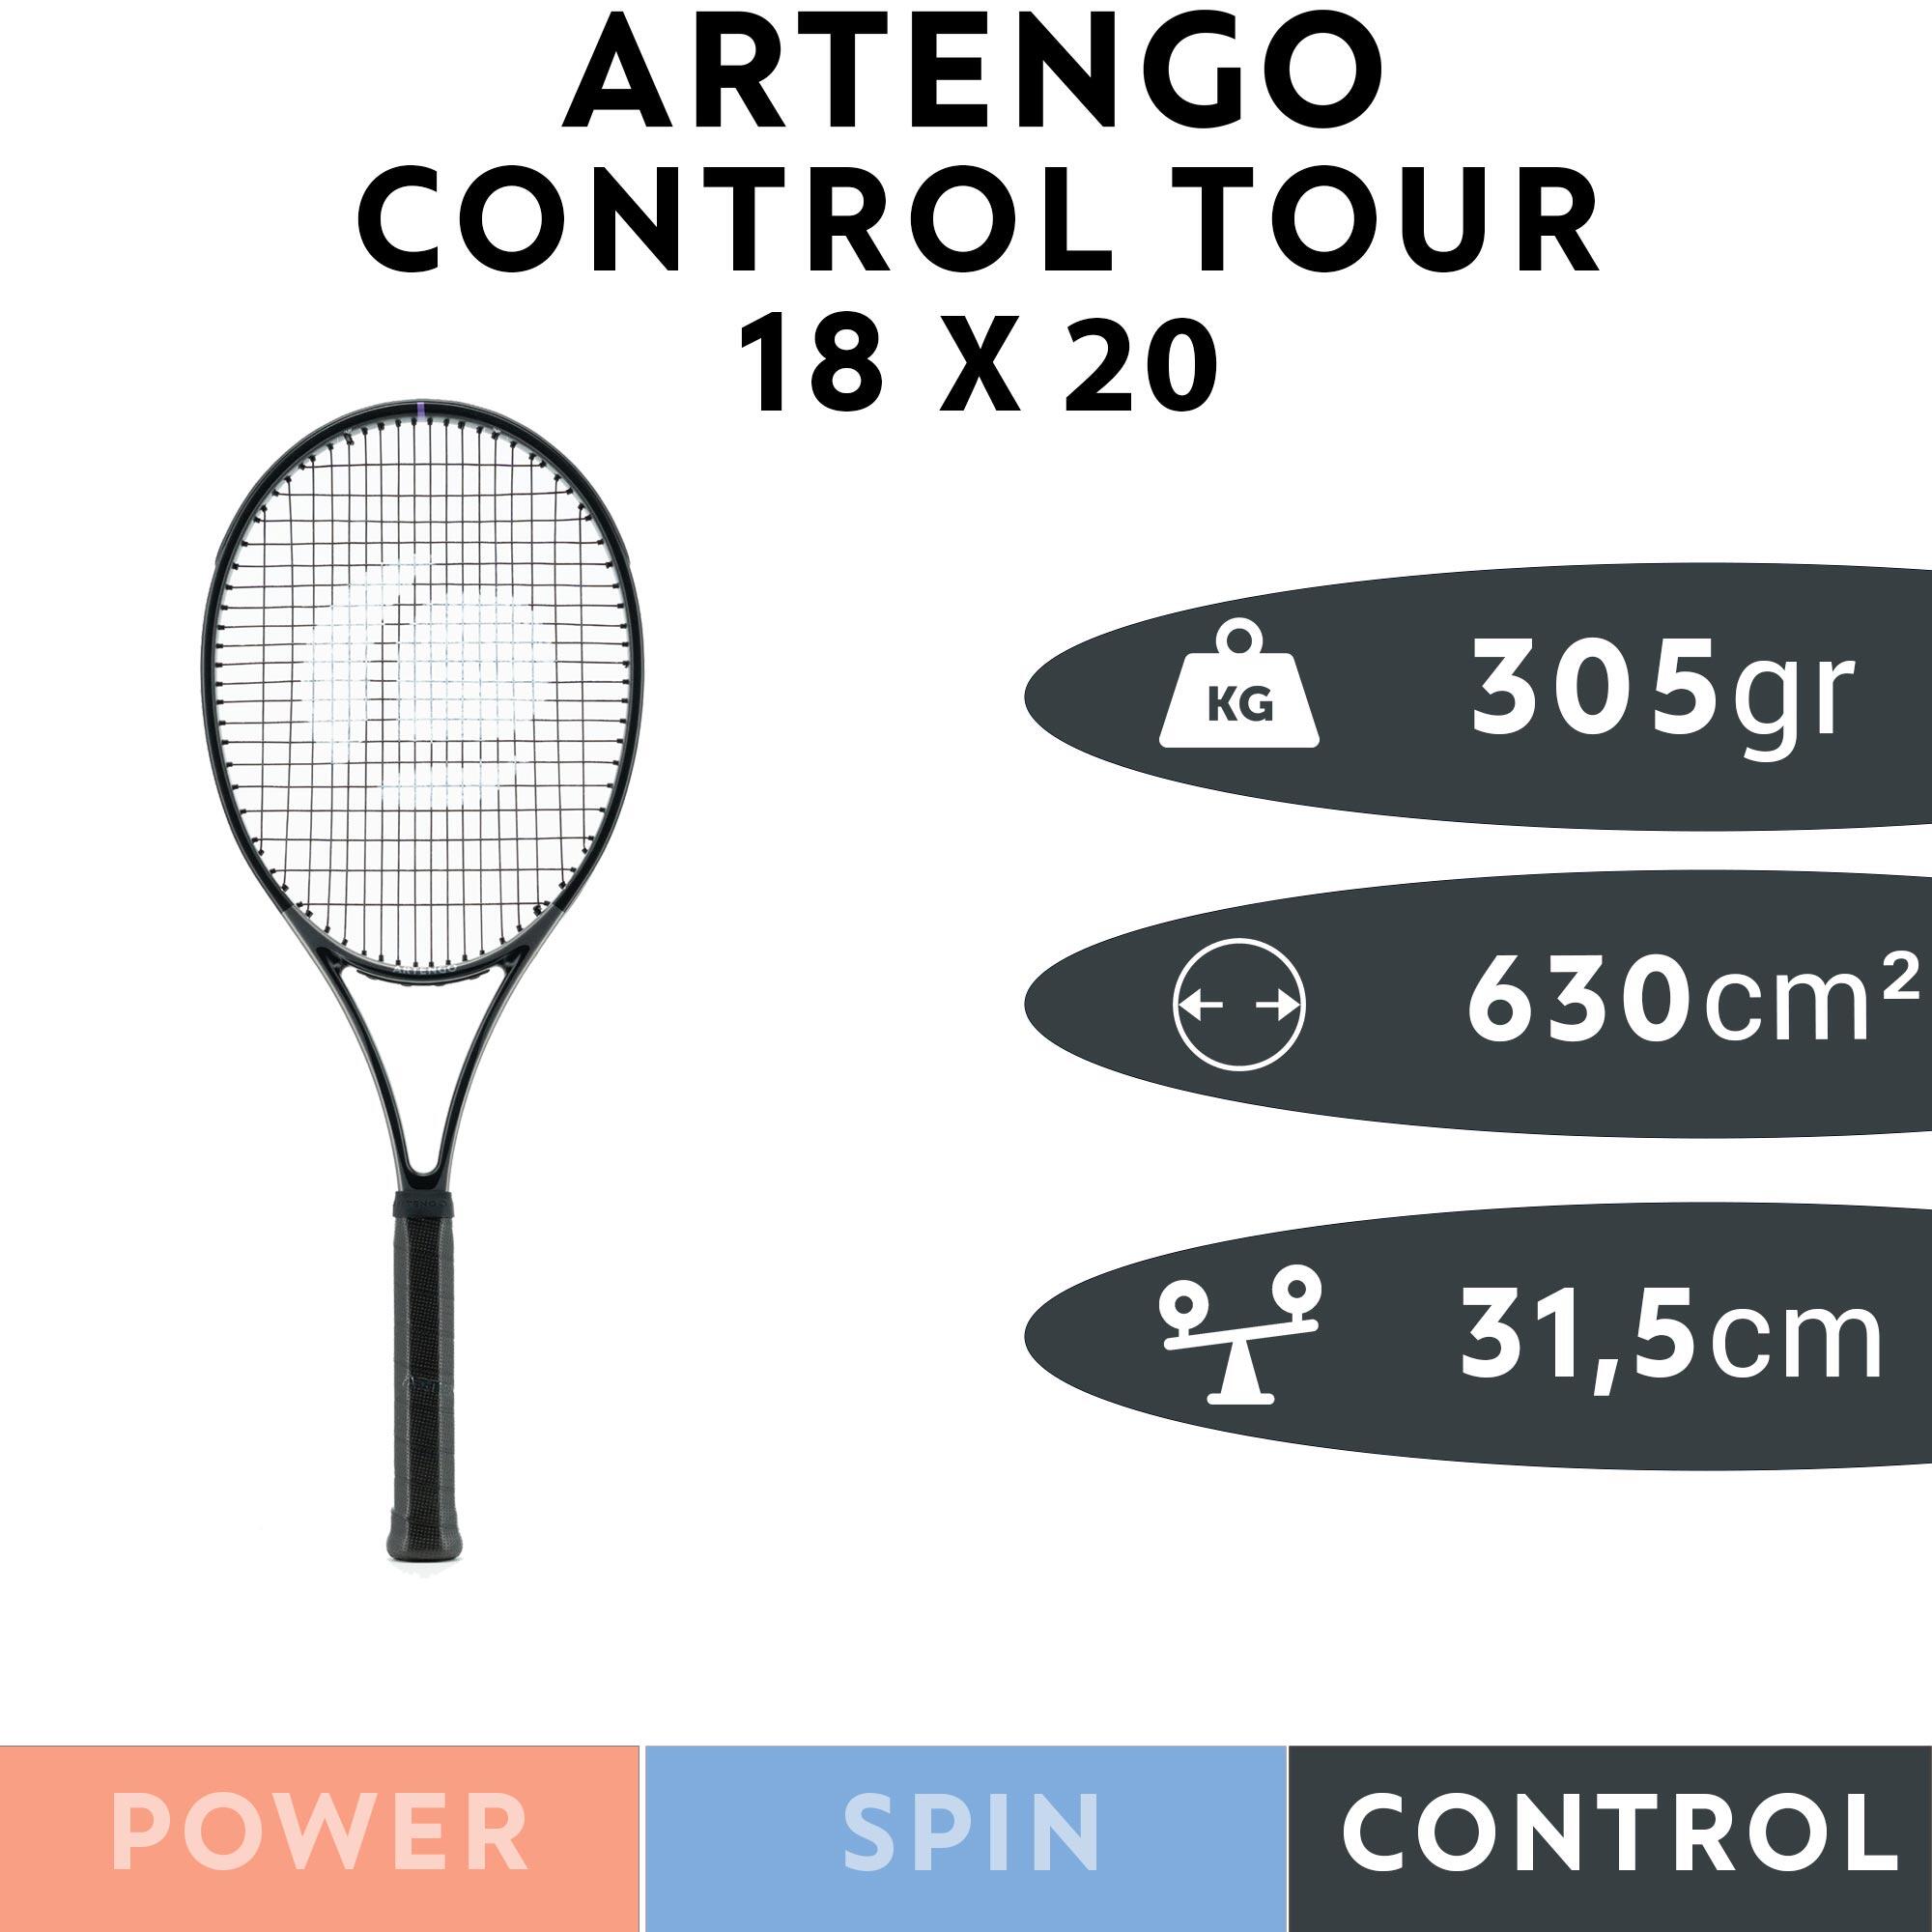 ARTENGO TR960Control Tour 18×20 G3 | comprehensivepainrelief.com